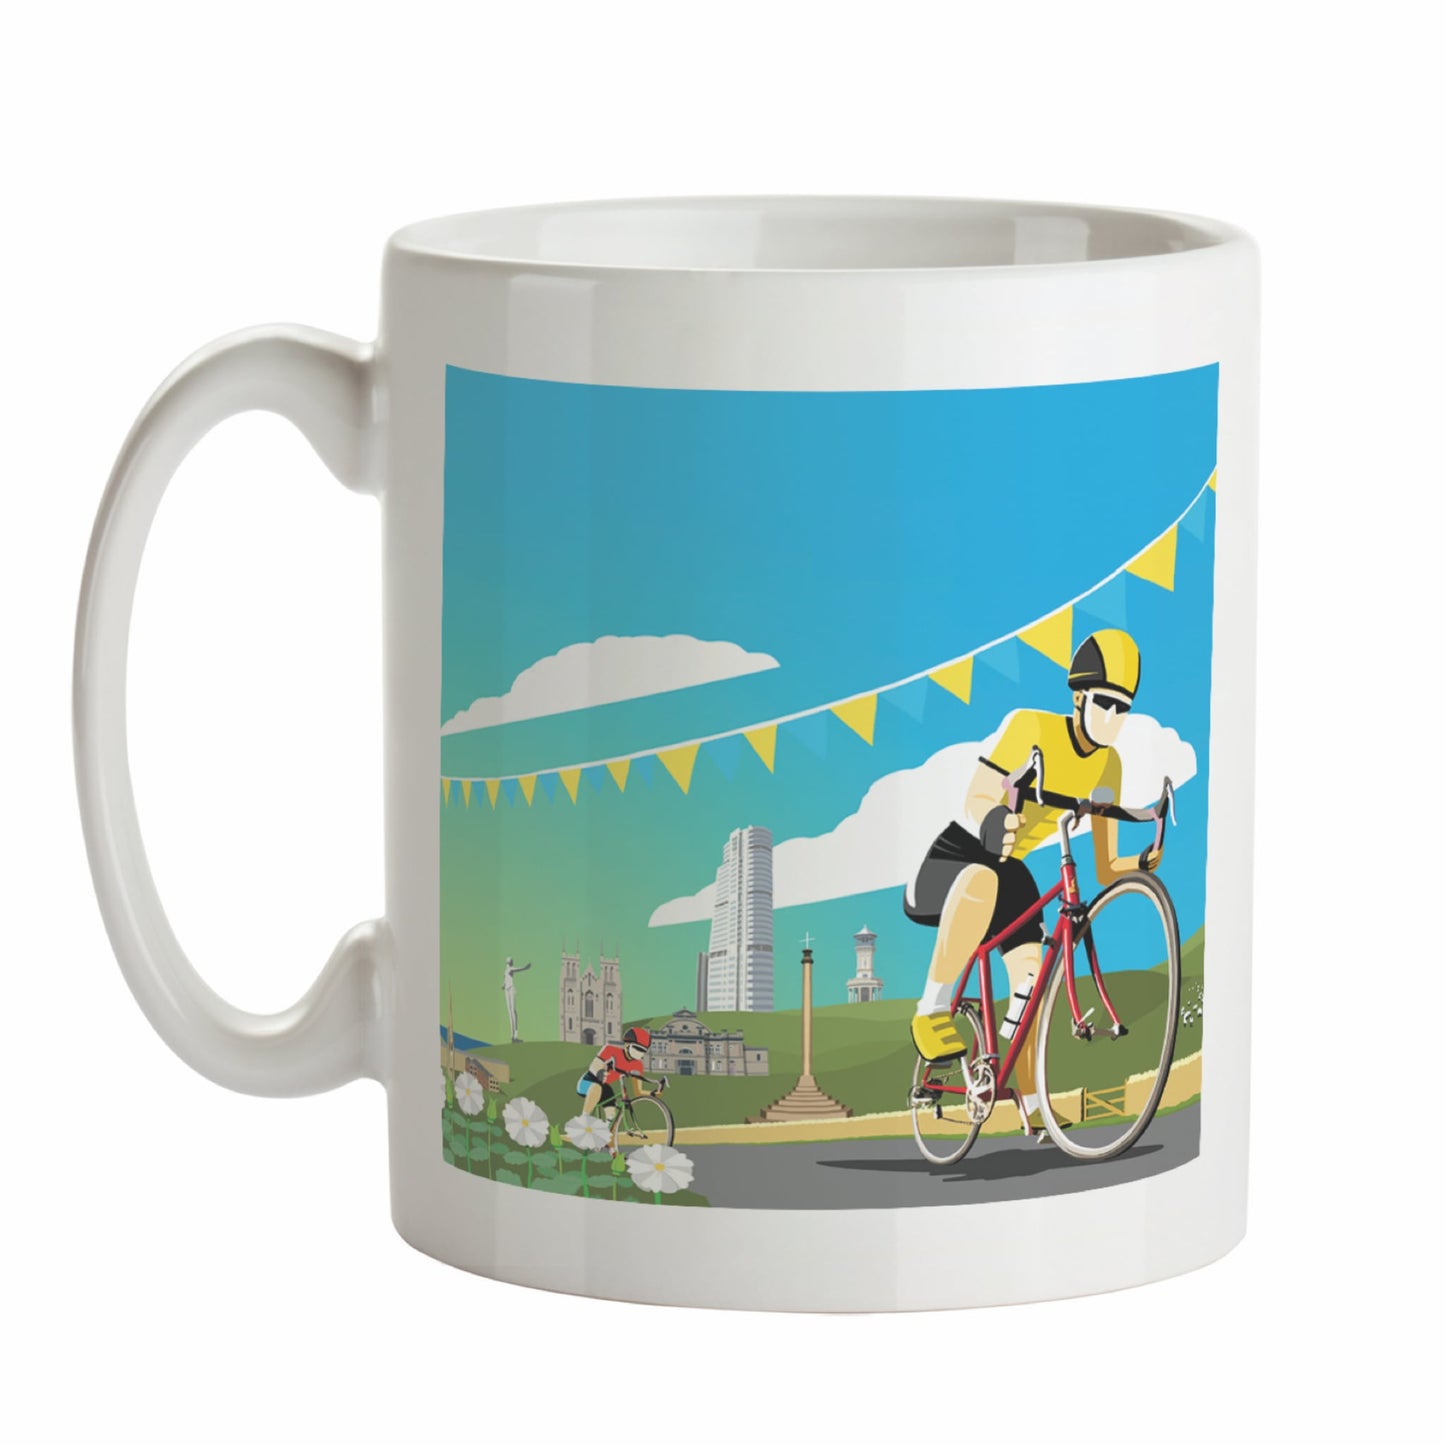 Tour de Yorkshire Mug - The Great Yorkshire Shop